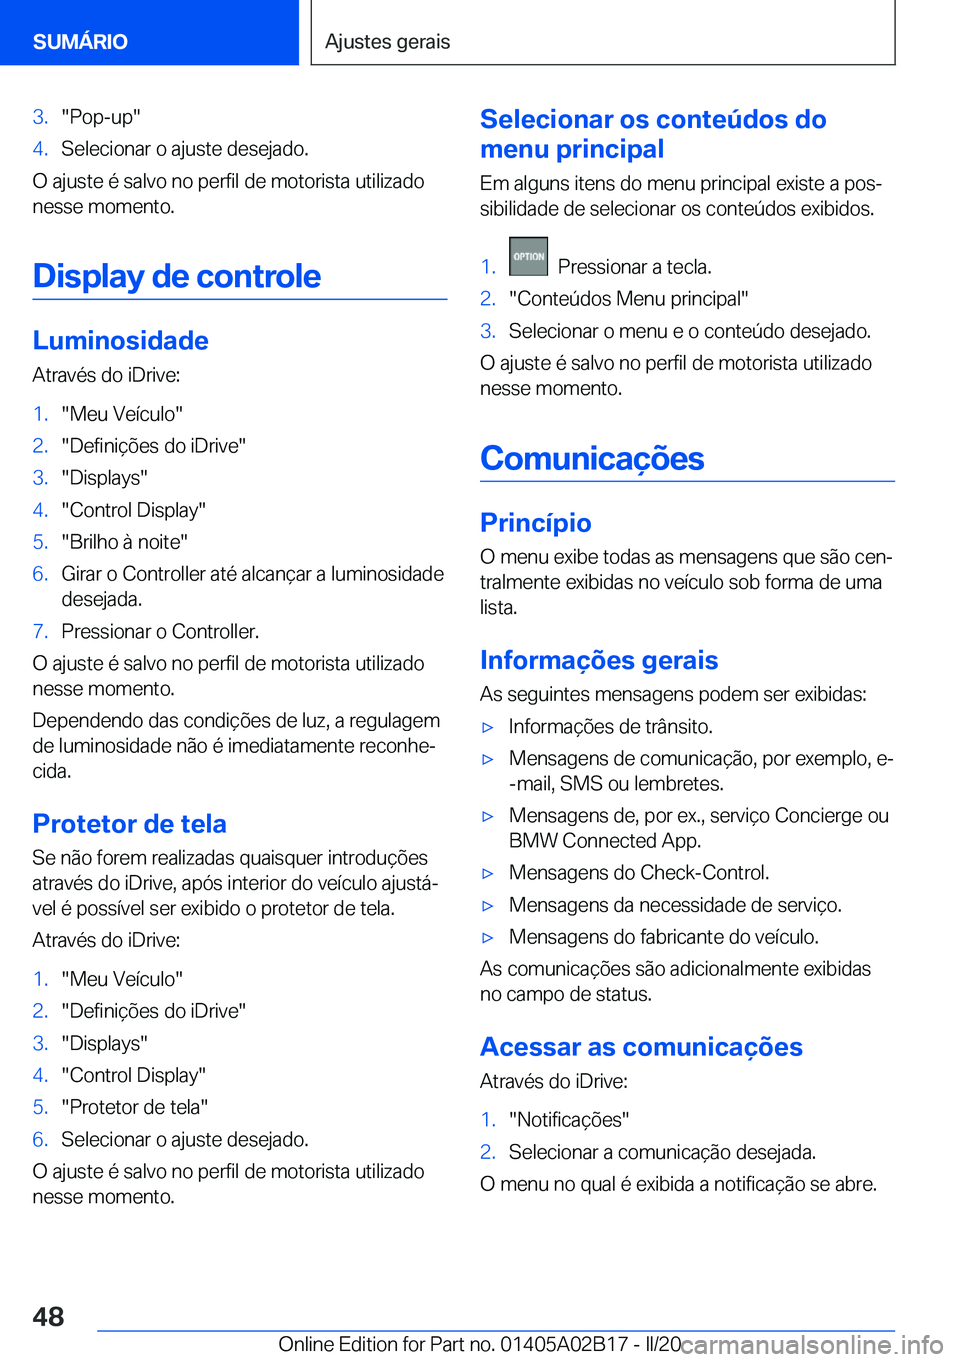 BMW X1 2020  Manual do condutor (in Portuguese) �3�.��P�o�p�-�u�p��4�.�S�e�l�e�c�i�o�n�a�r��o��a�j�u�s�t�e��d�e�s�e�j�a�d�o�.
�O��a�j�u�s�t�e��é��s�a�l�v�o��n�o��p�e�r�f�i�l��d�e��m�o�t�o�r�i�s�t�a��u�t�i�l�i�z�a�d�o
�n�e�s�s�e��m�o�